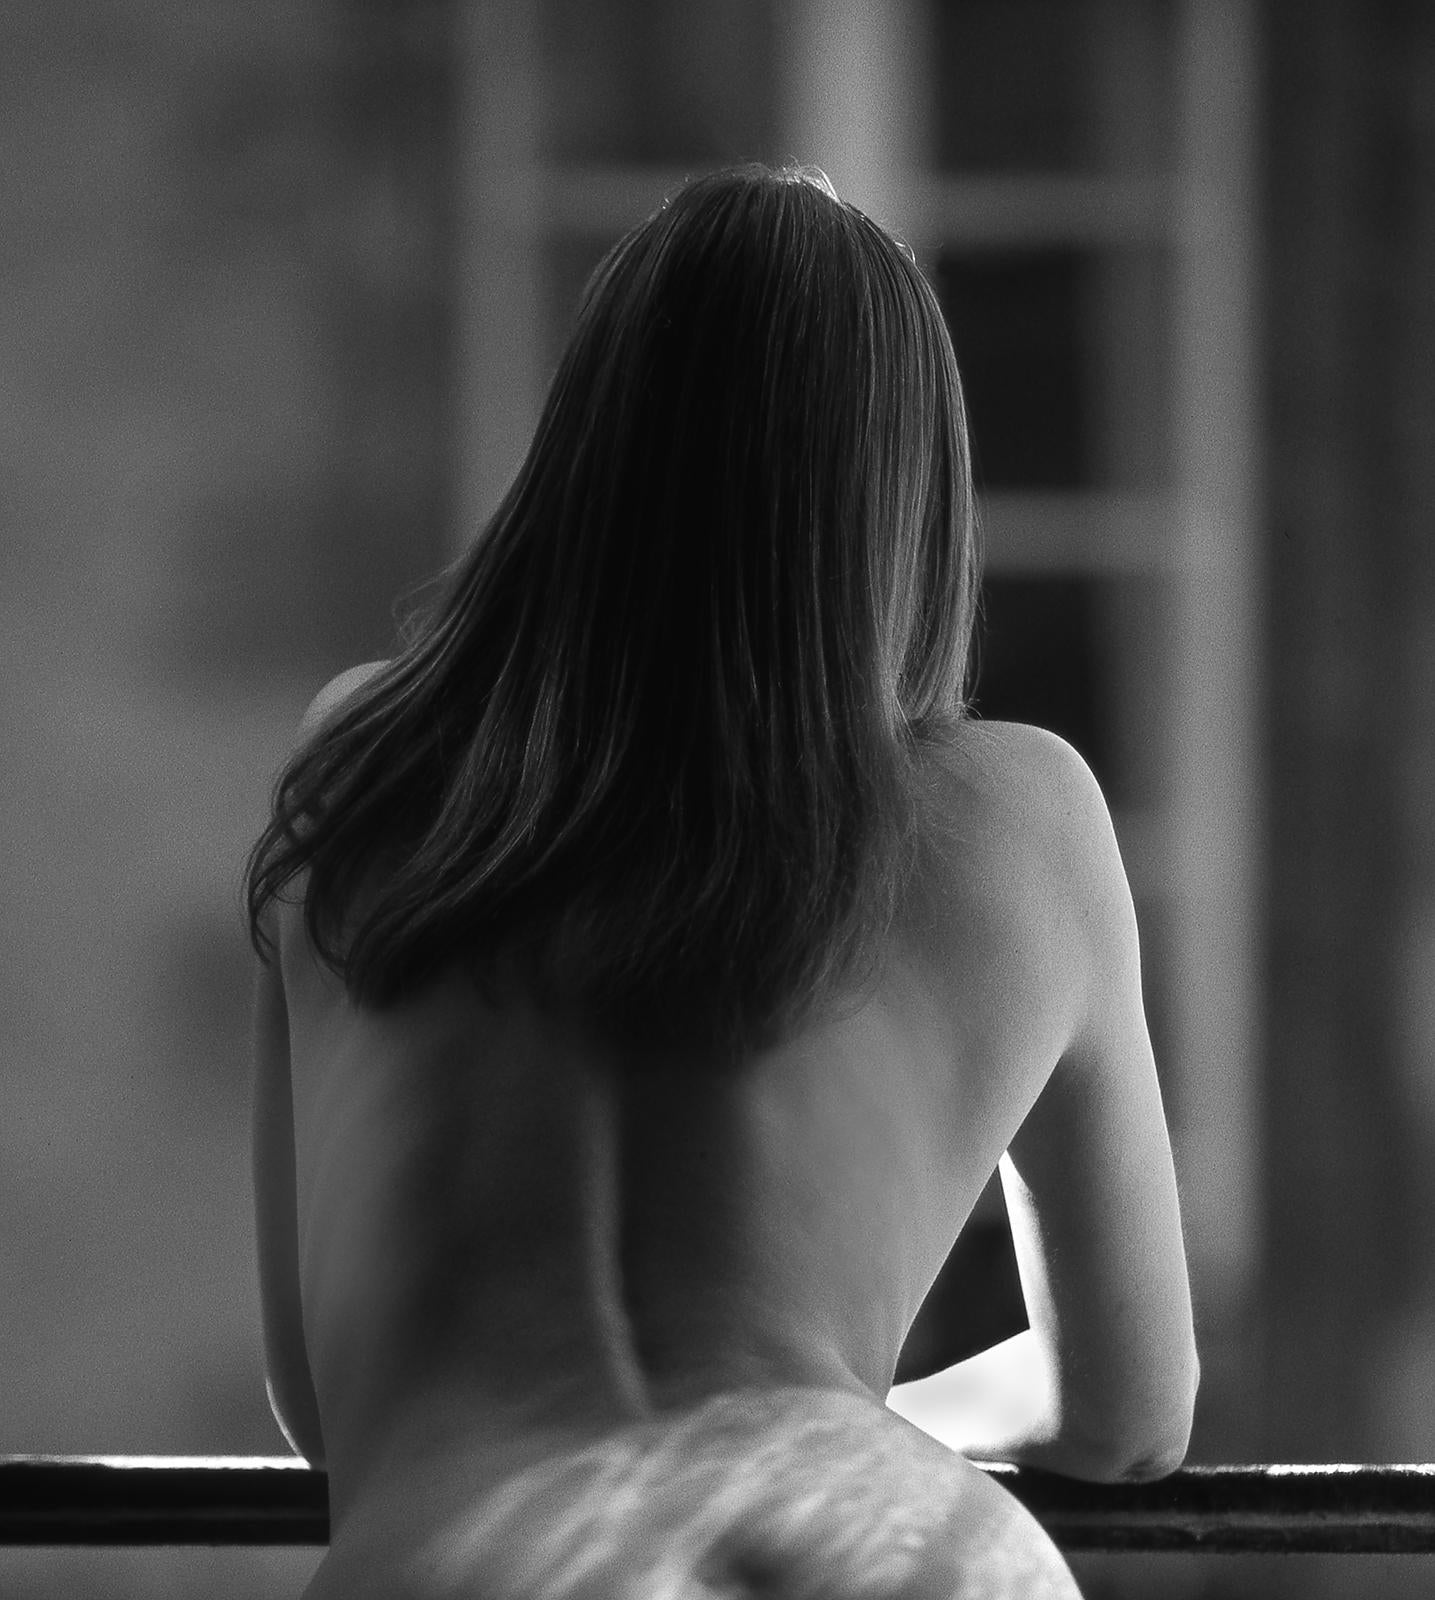 Sandrine 2 - Édition limitée signée d'un tirage aux pigments d'archives  -  Edition de 5
Femme nue de dos à la fenêtre d'un vieil appartement en Bretagne, France. 
Vue sensuelle de ses hanches et de ses fesses qui se balancent.
Provenance :